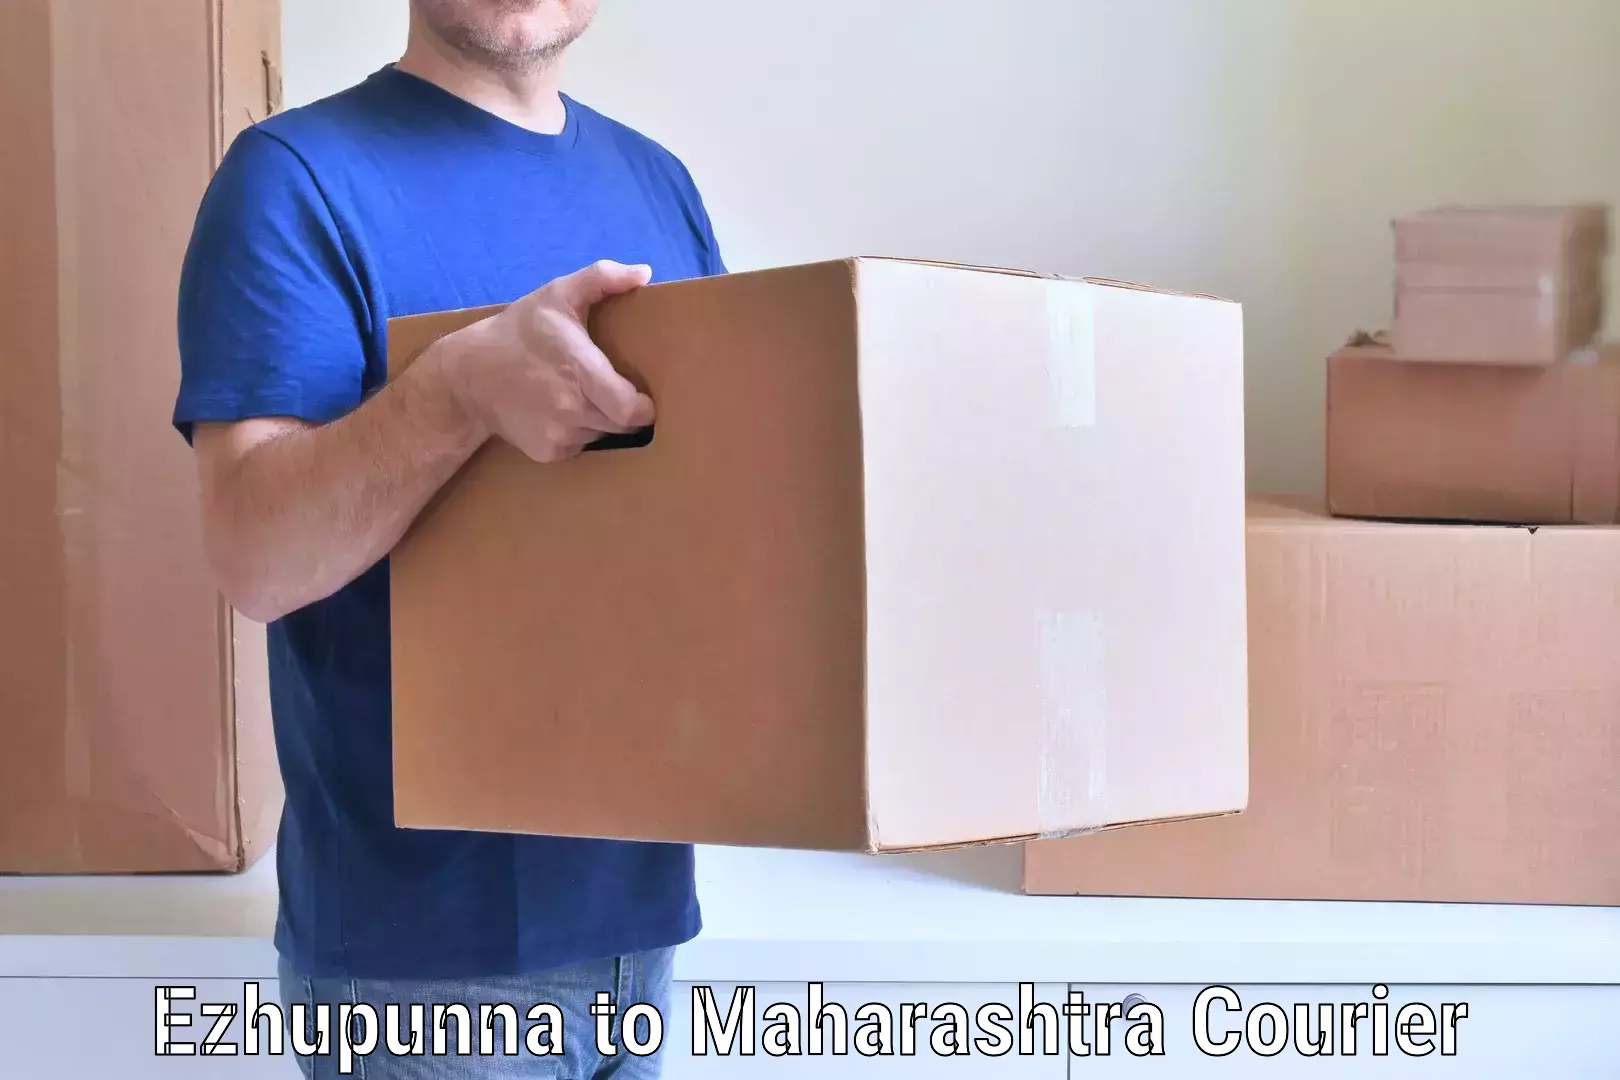 Budget-friendly movers in Ezhupunna to Maharashtra